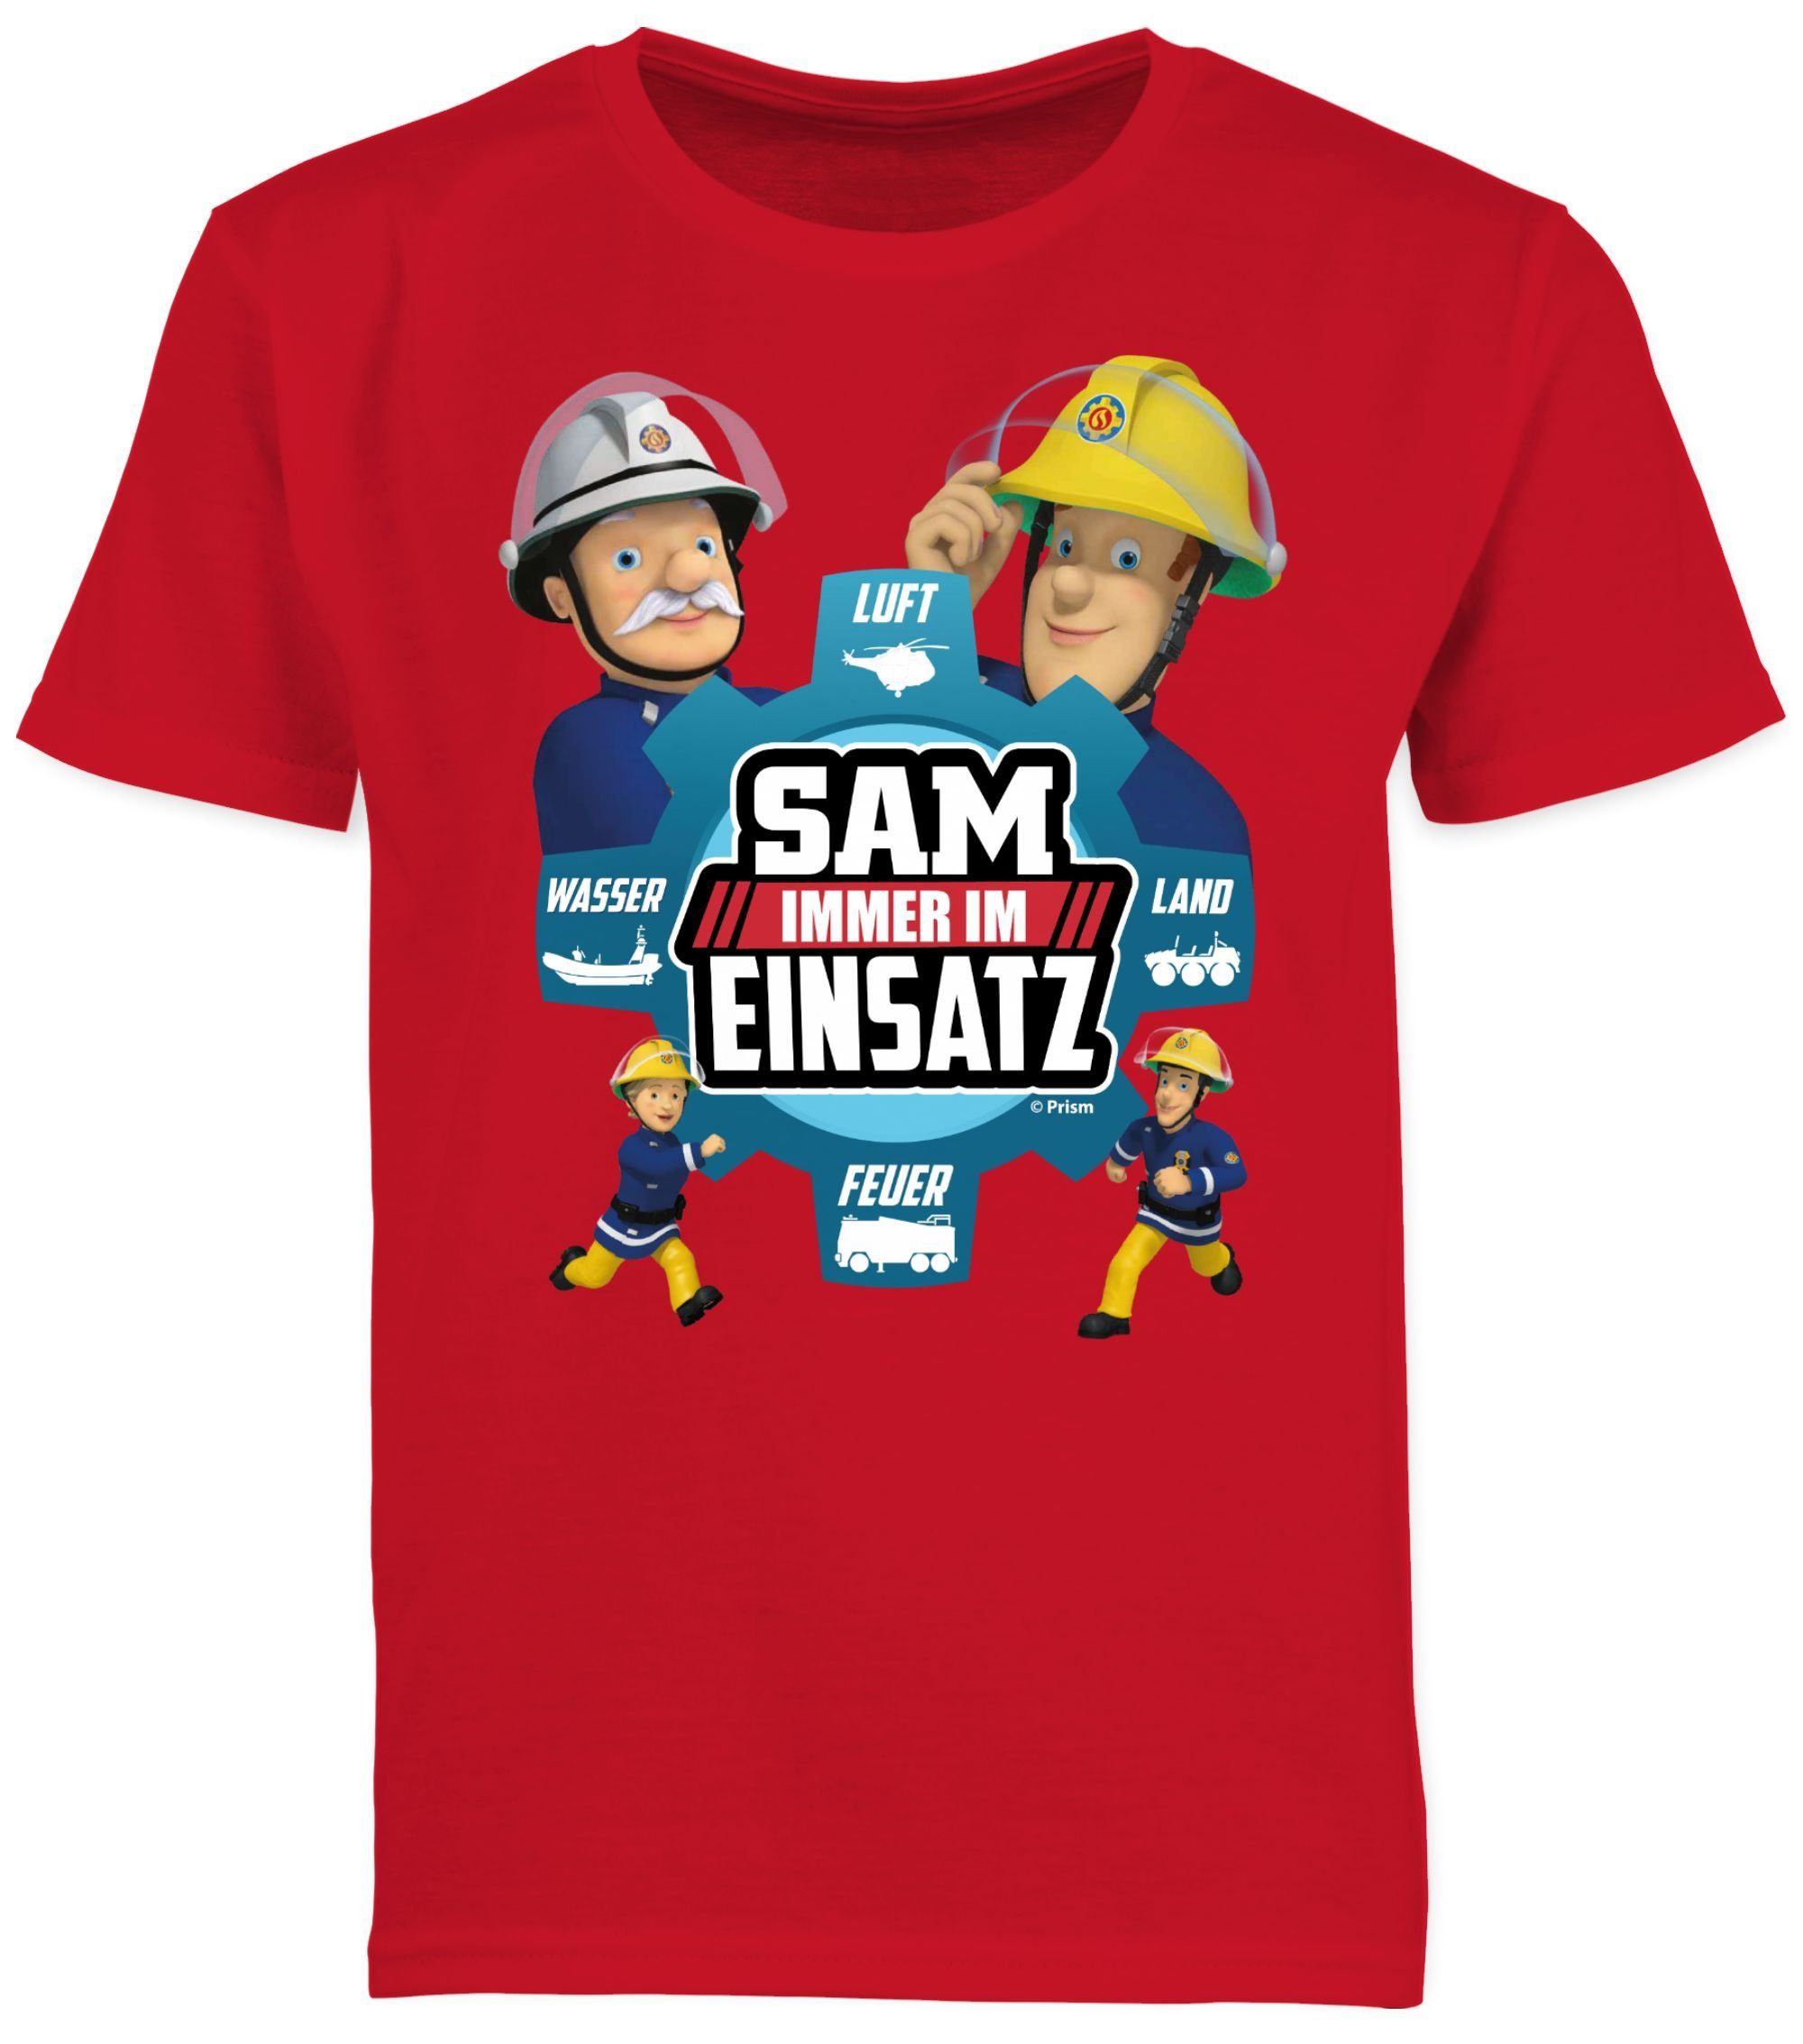 01 - Einsatz Sam Feuerwehrmann Jungen im Rot Shirtracer Sam T-Shirt Immer